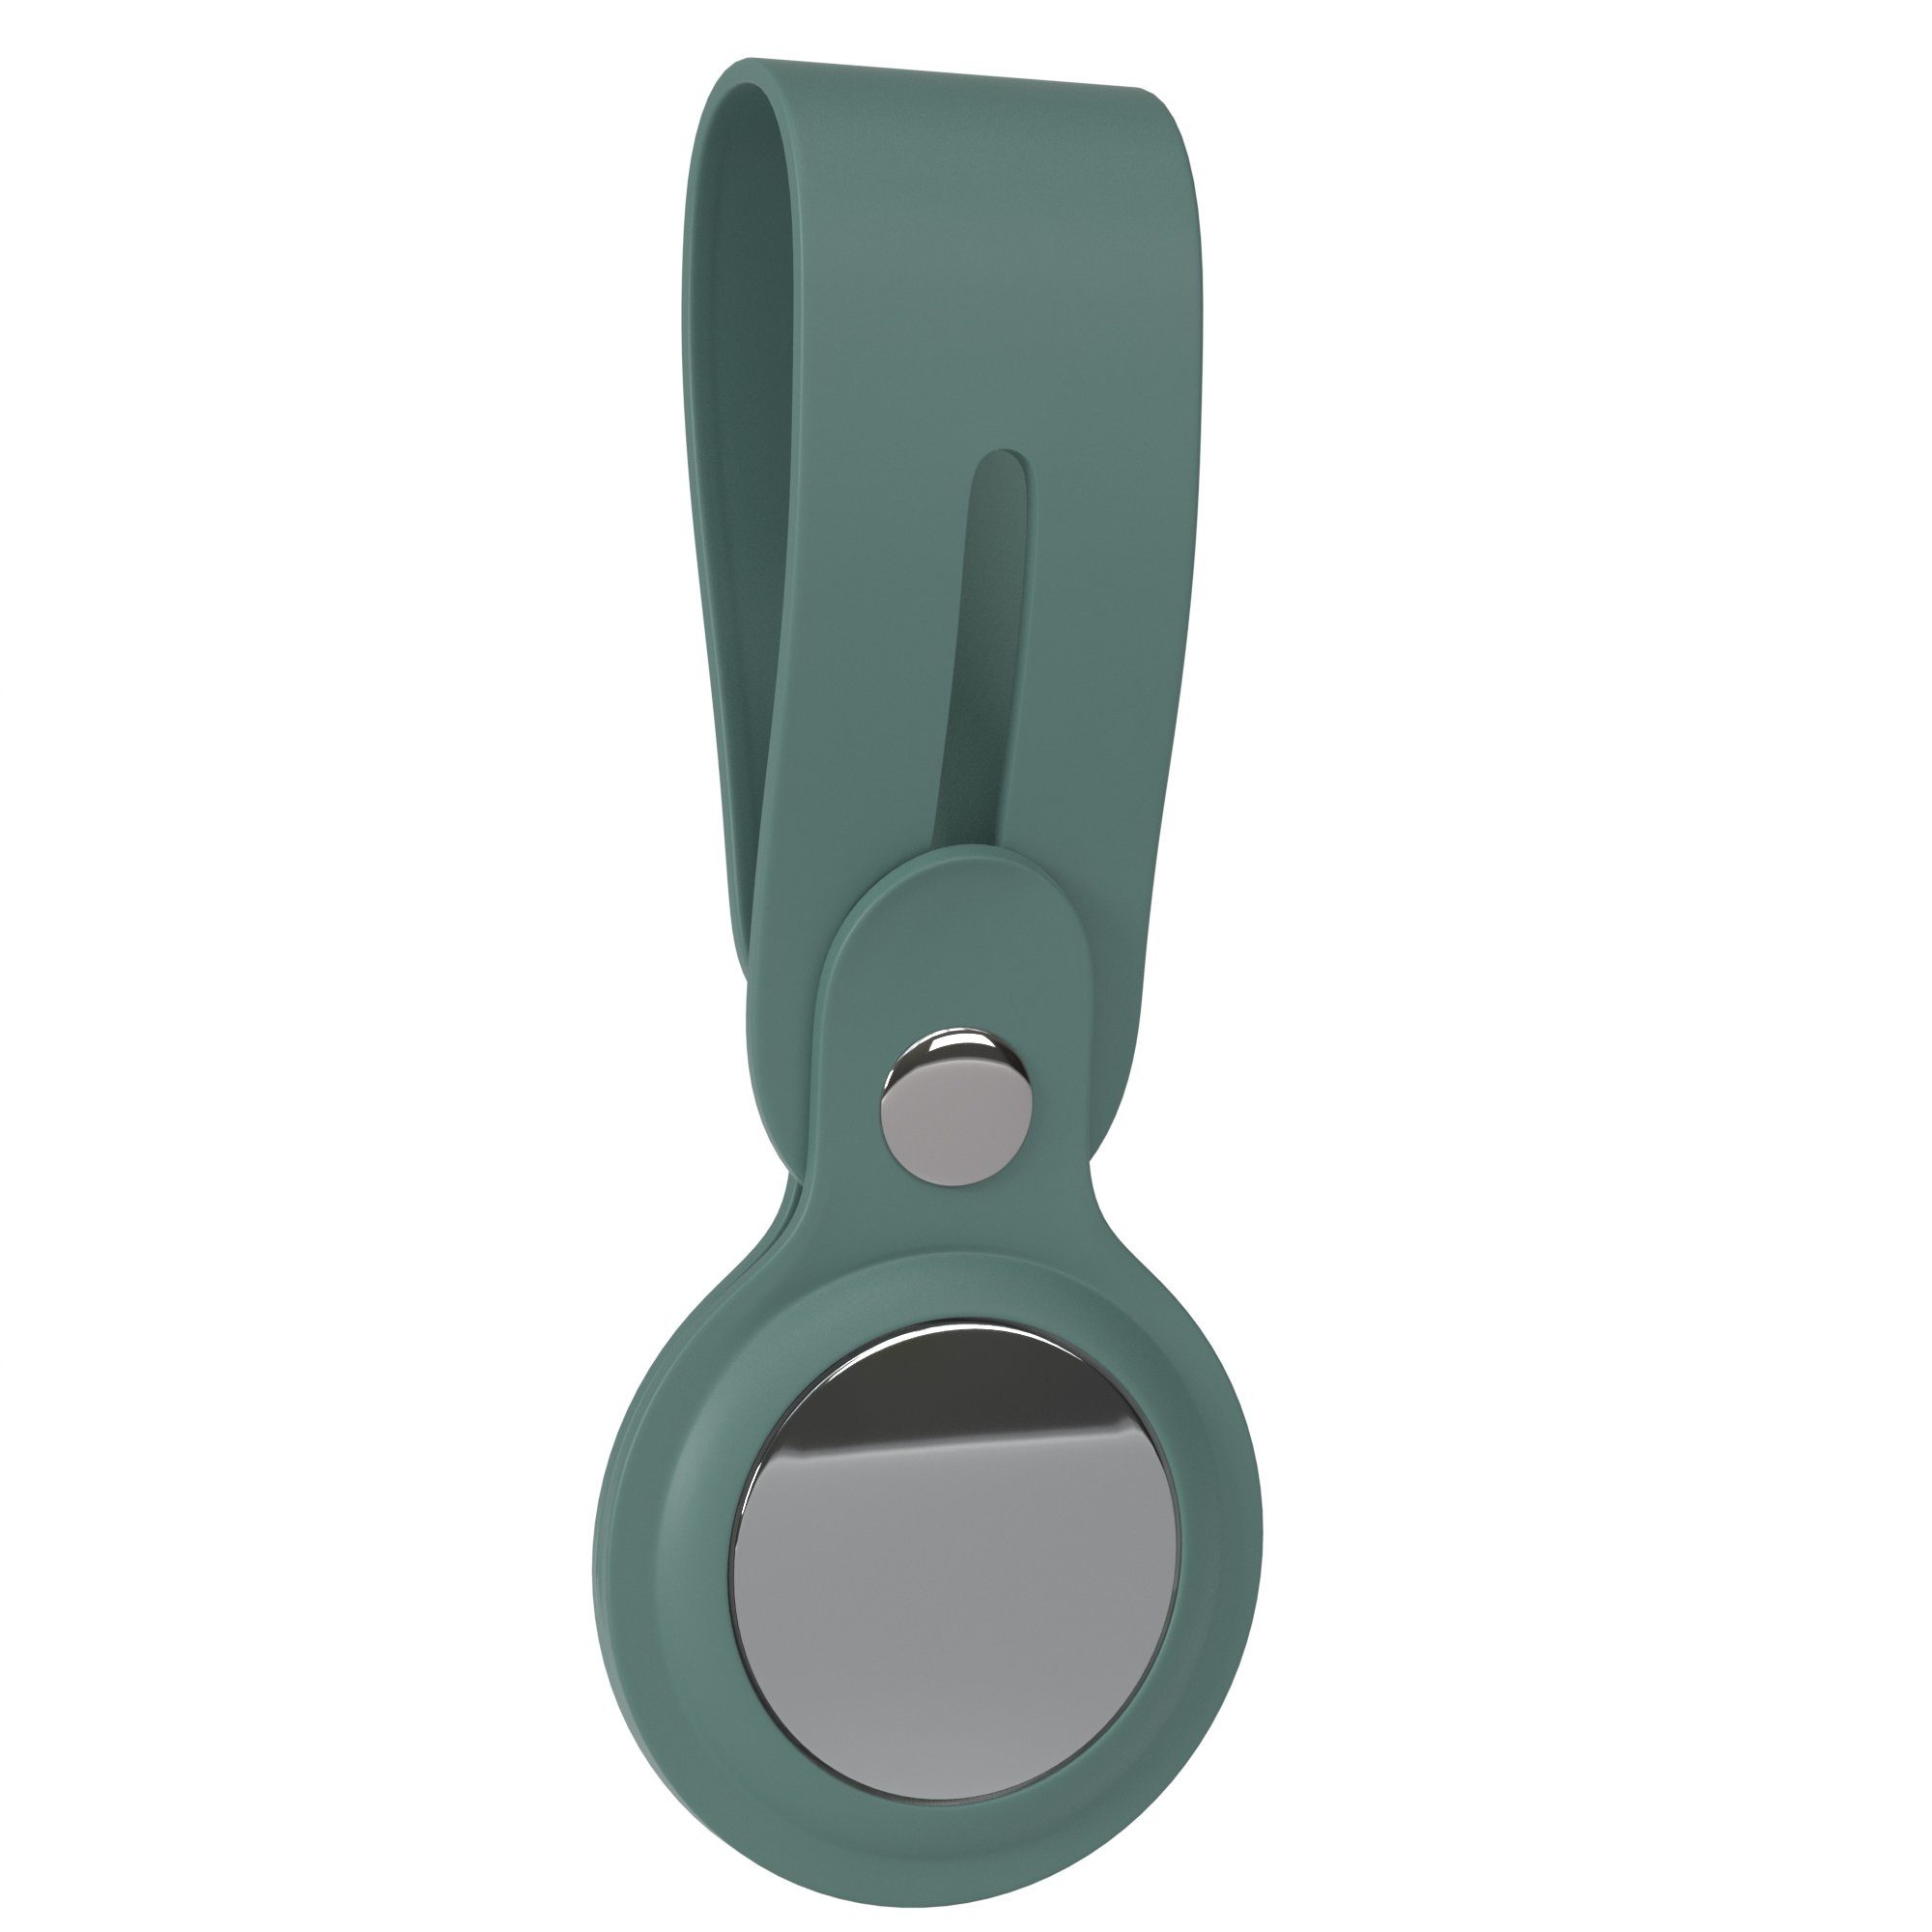 EAZY CASE Schlüsselanhänger Anhänger kompatibel mit Apple AirTag, Airtags Hülle aus Silikon Ring Schlüssel flexibel Tasche Nacht Grün